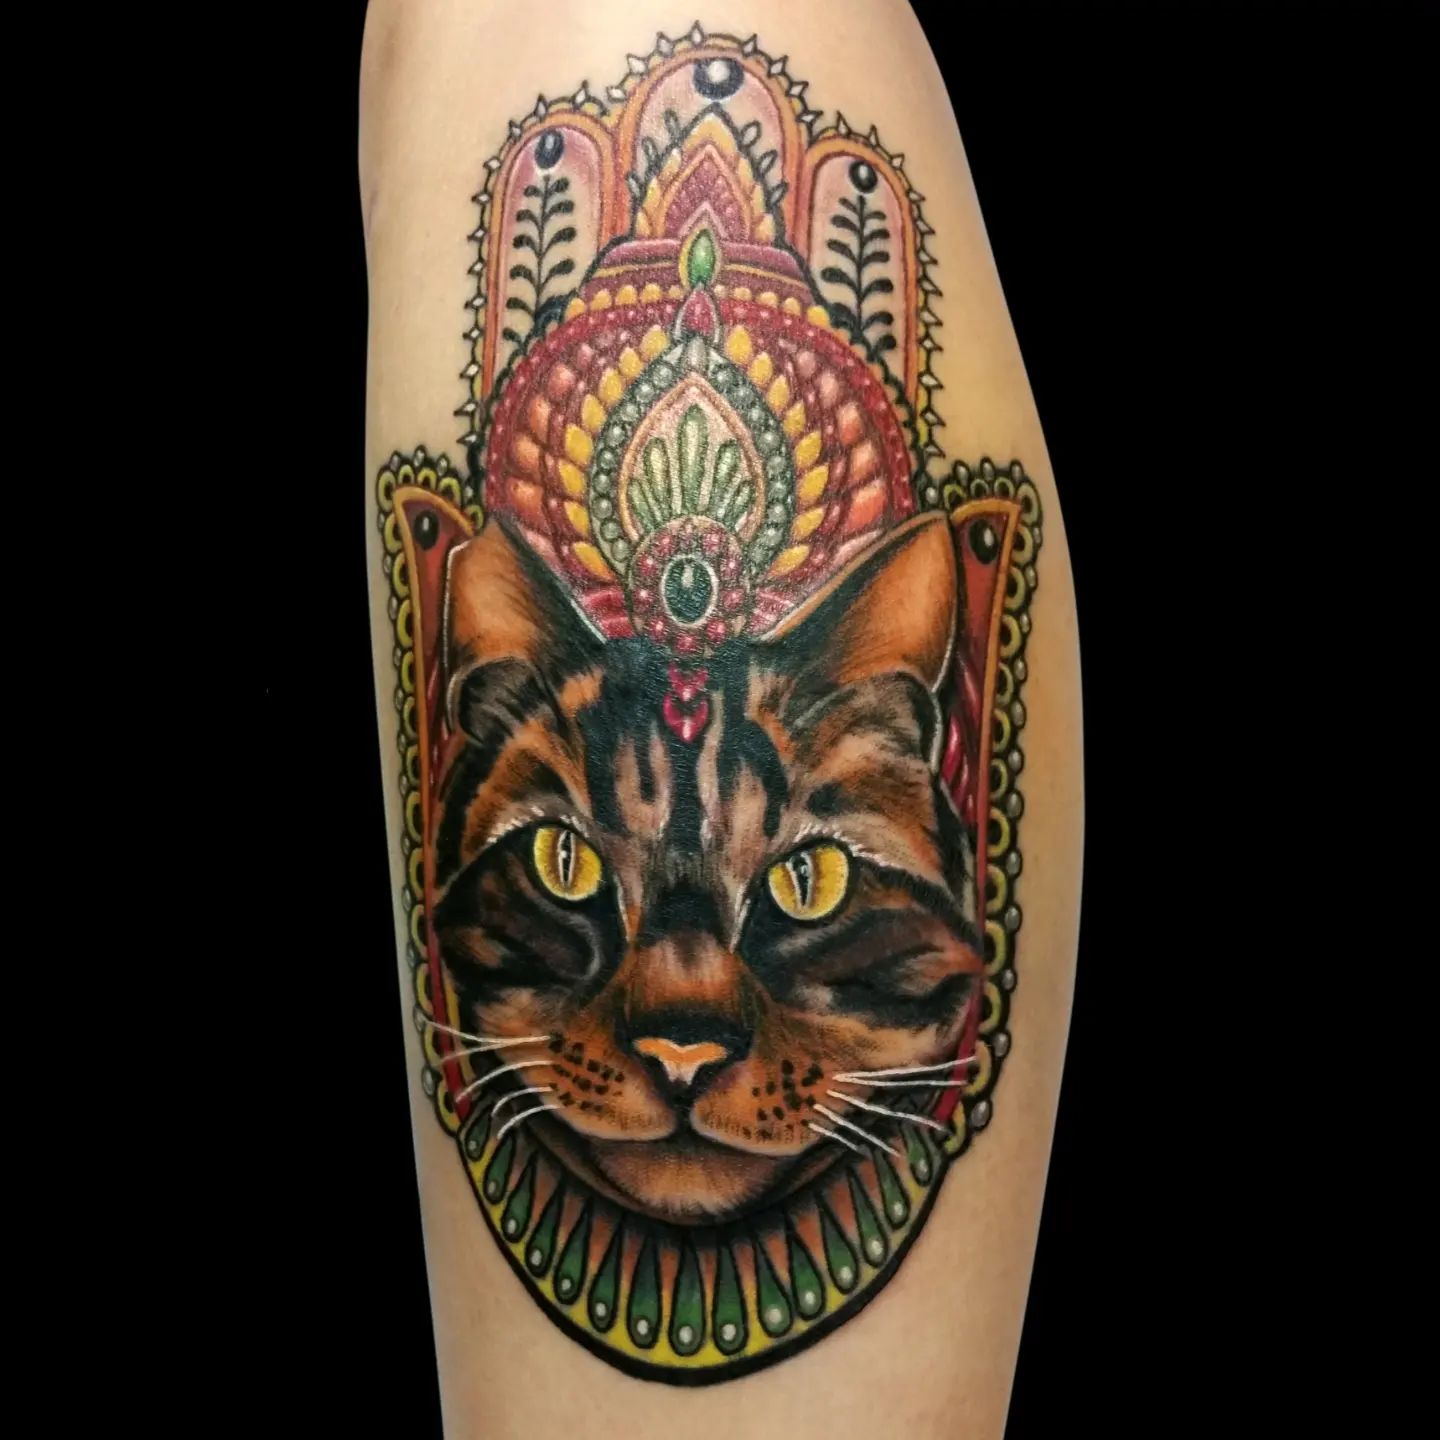 Hamsa y Cat Tattoo (No necesita traducción, son nombres propios)